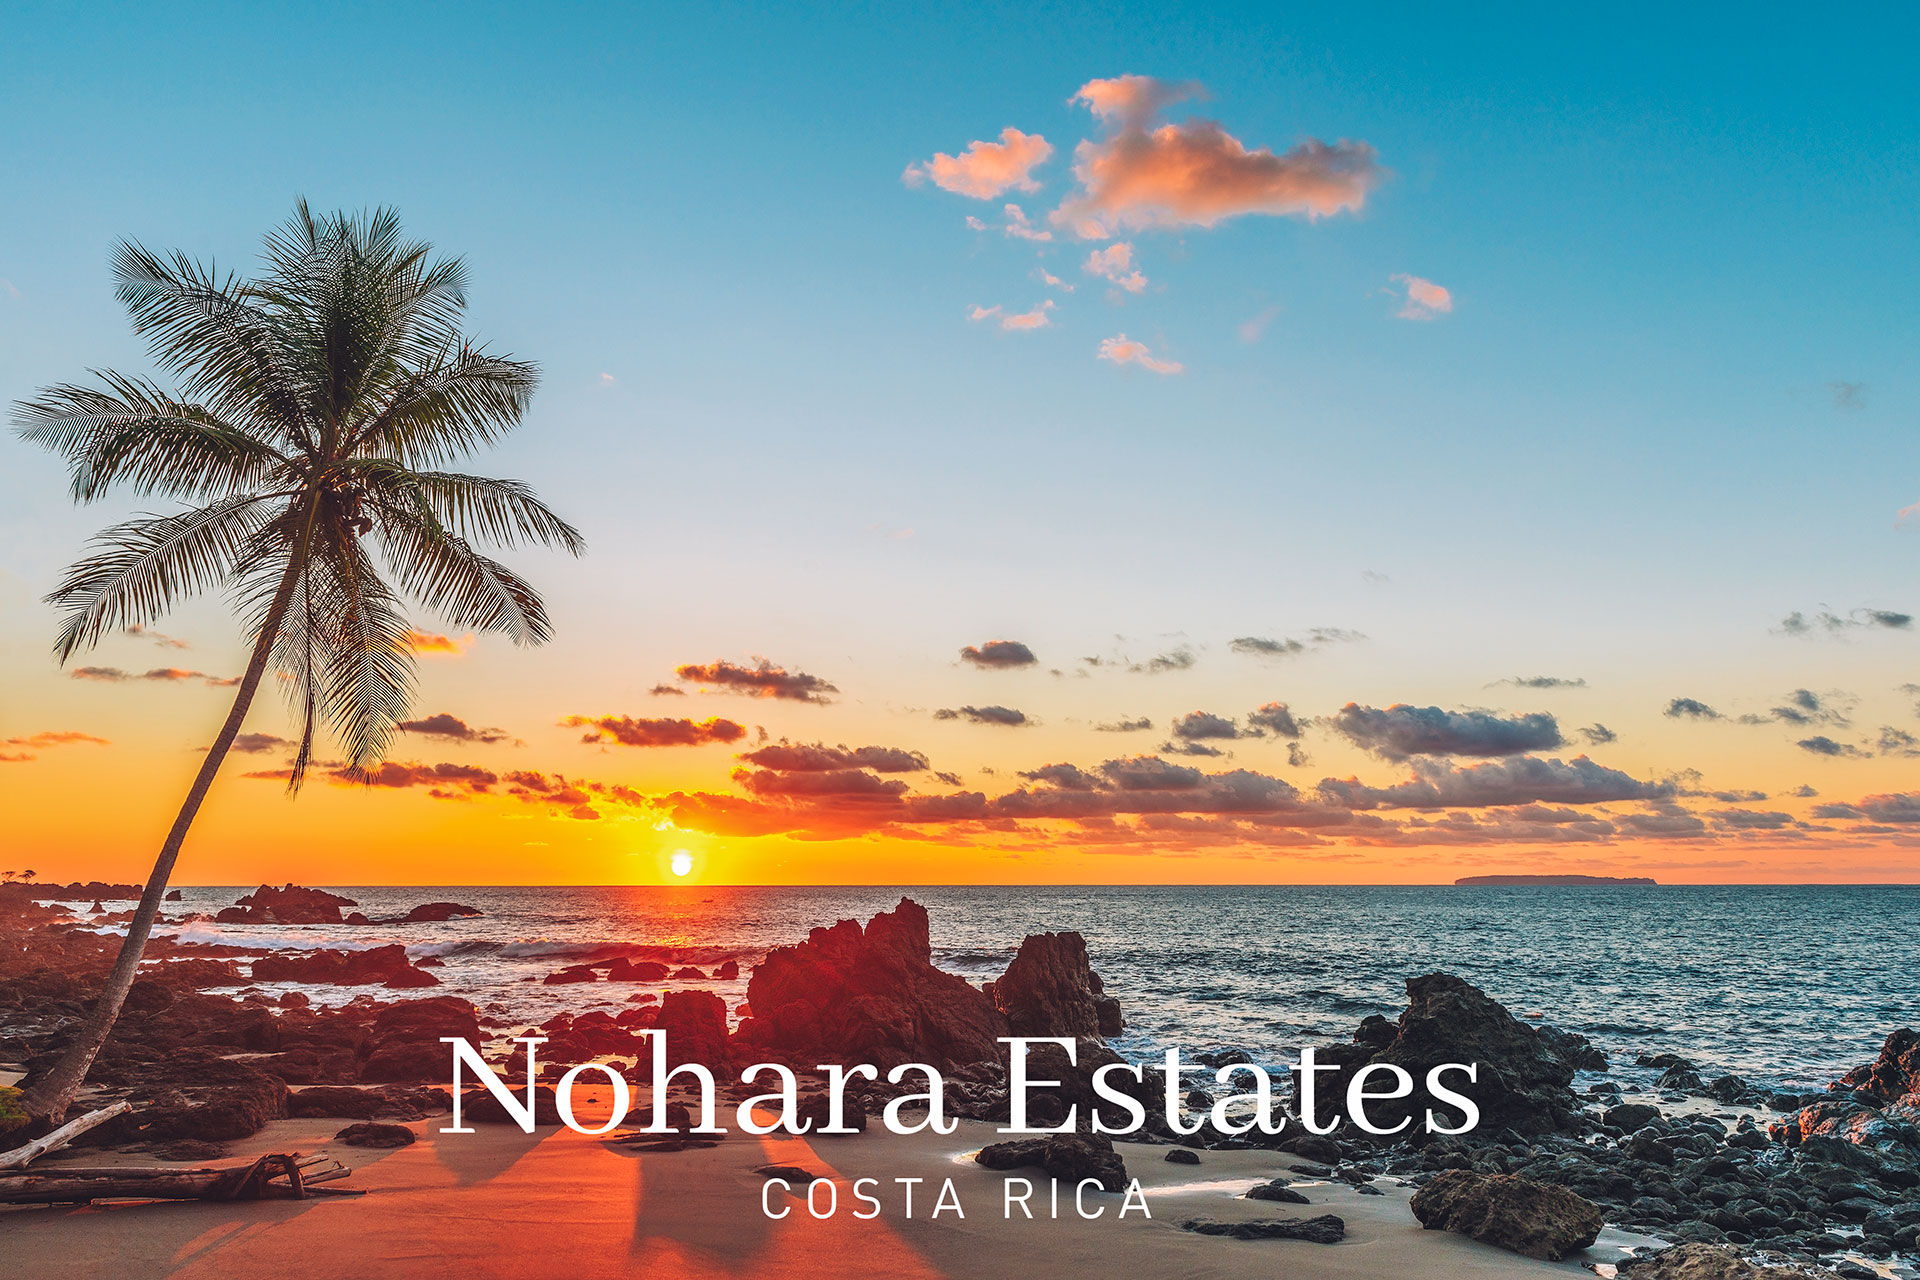 Nohara Estates Costa Rica Blue Zone 3